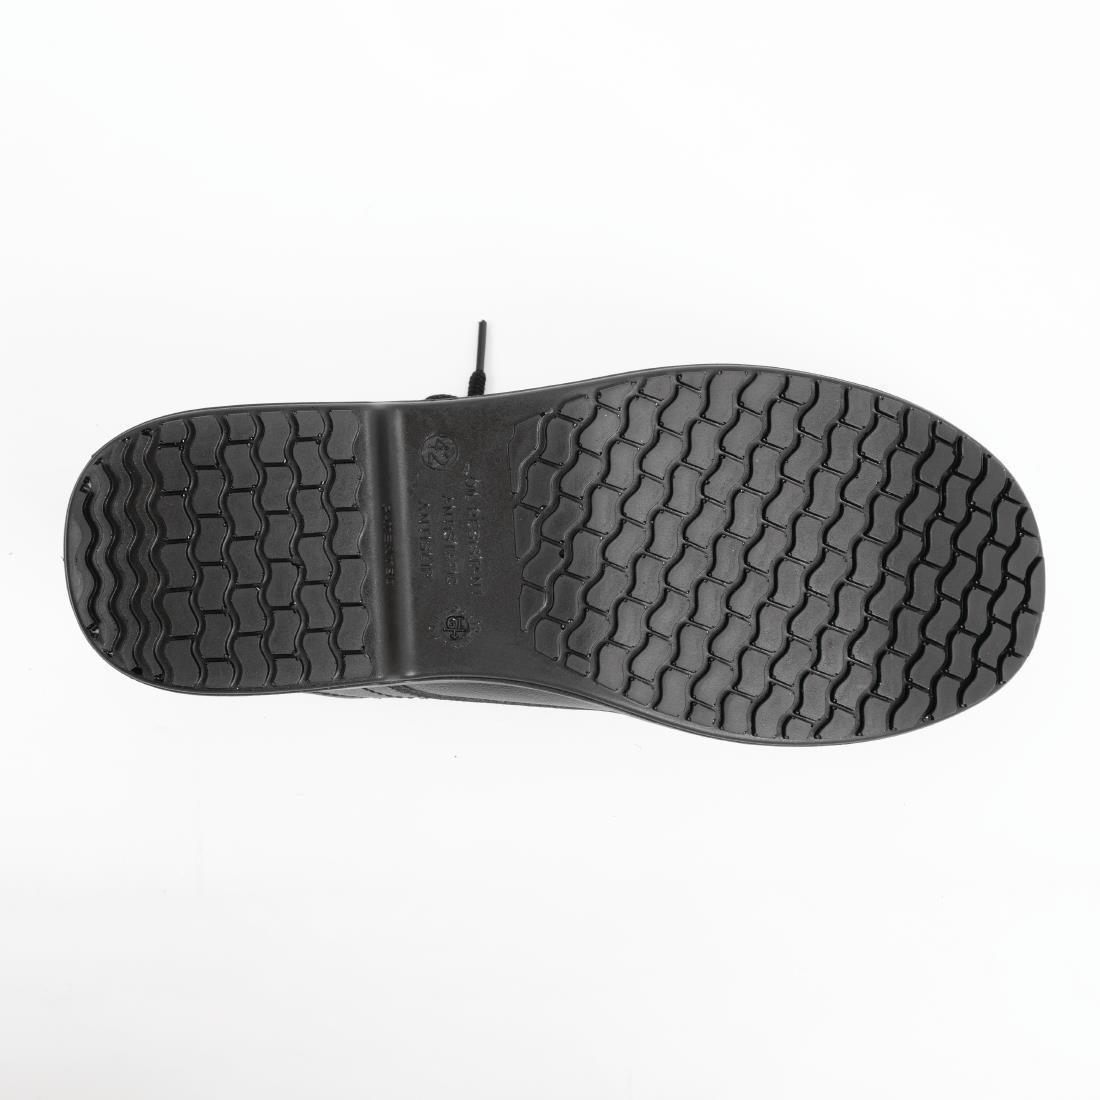 Slipbuster Basic Toe Cap Safety Shoes Black 40 - BB497-40  - 2